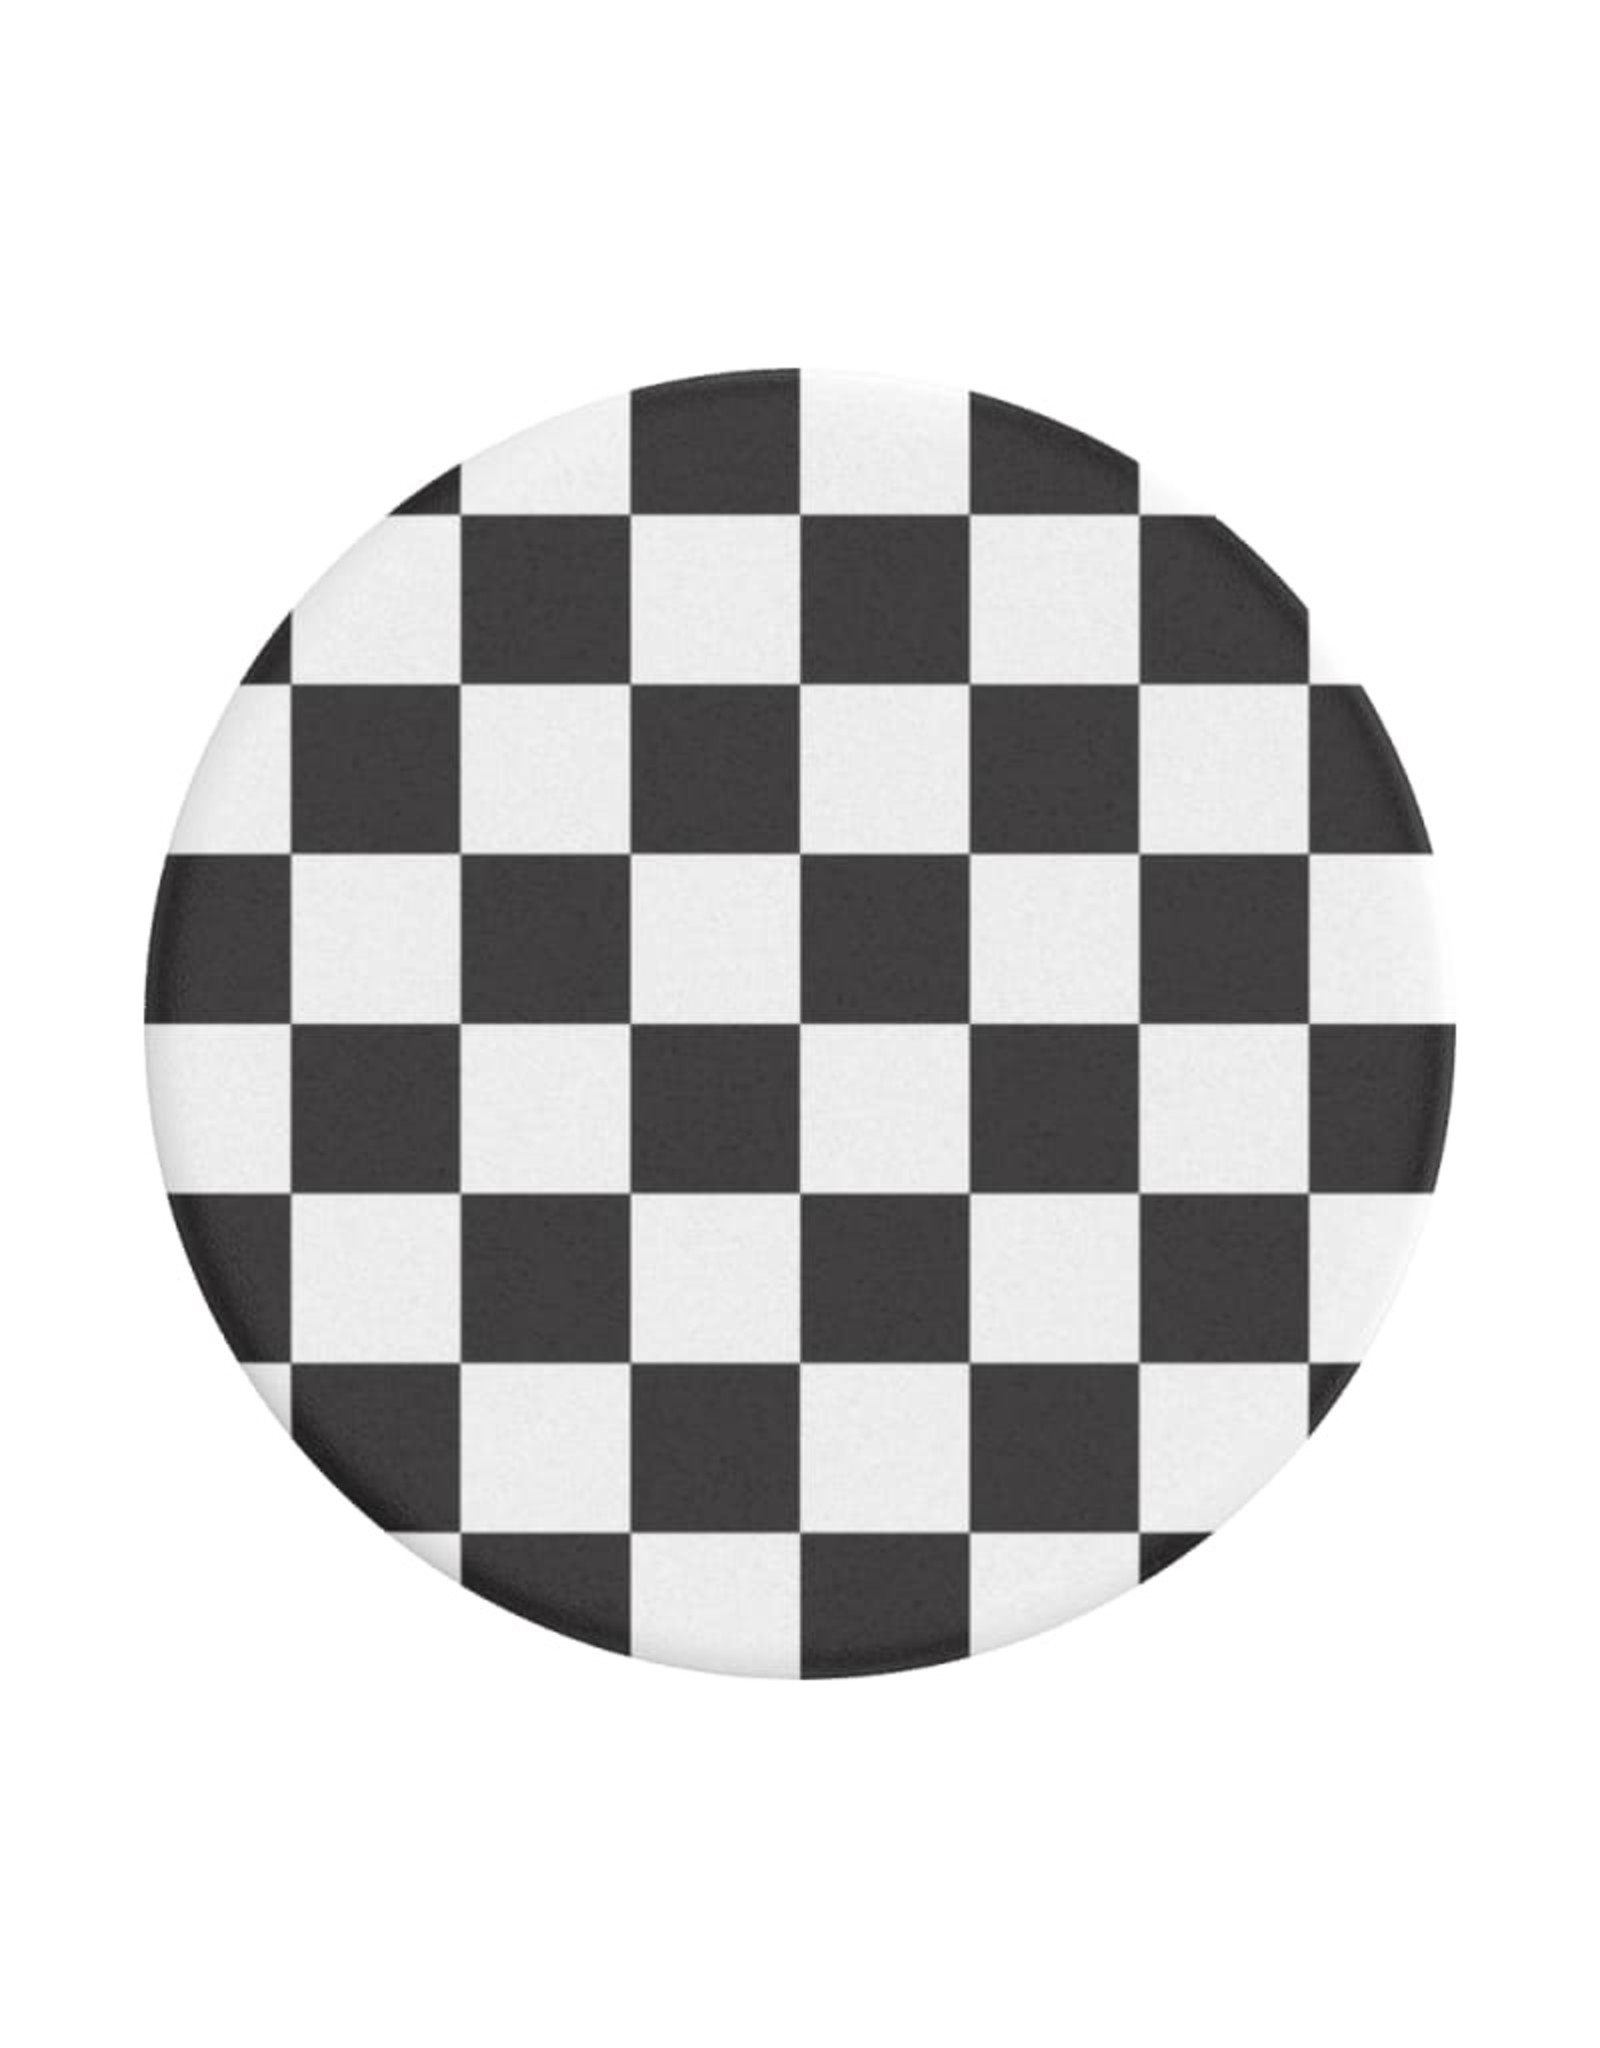 PopSockets Popsockets PopGrip (Gen2) - Checker Black